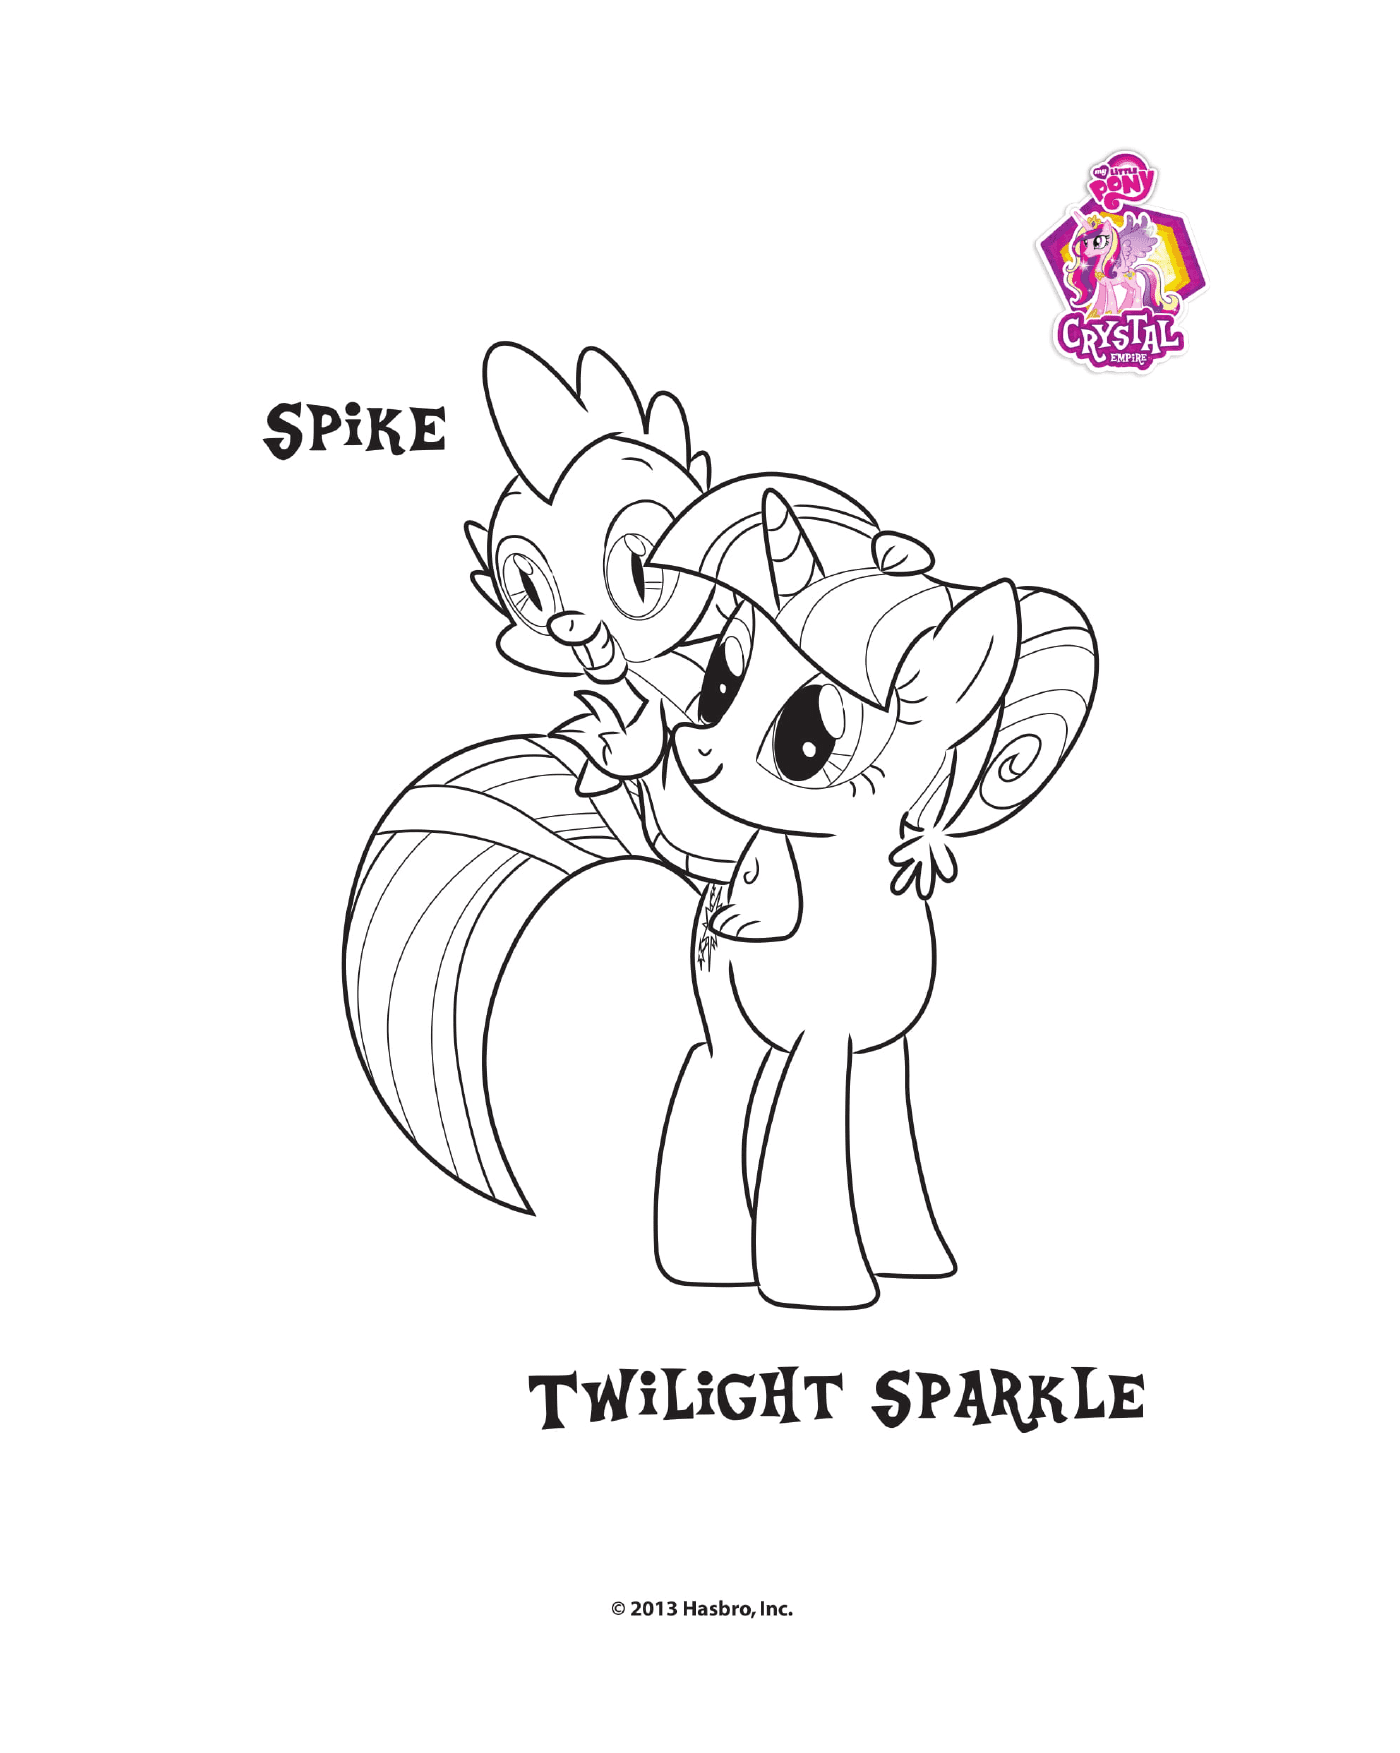   Spike et Twilight Sparkle à l'Empire Crystal 